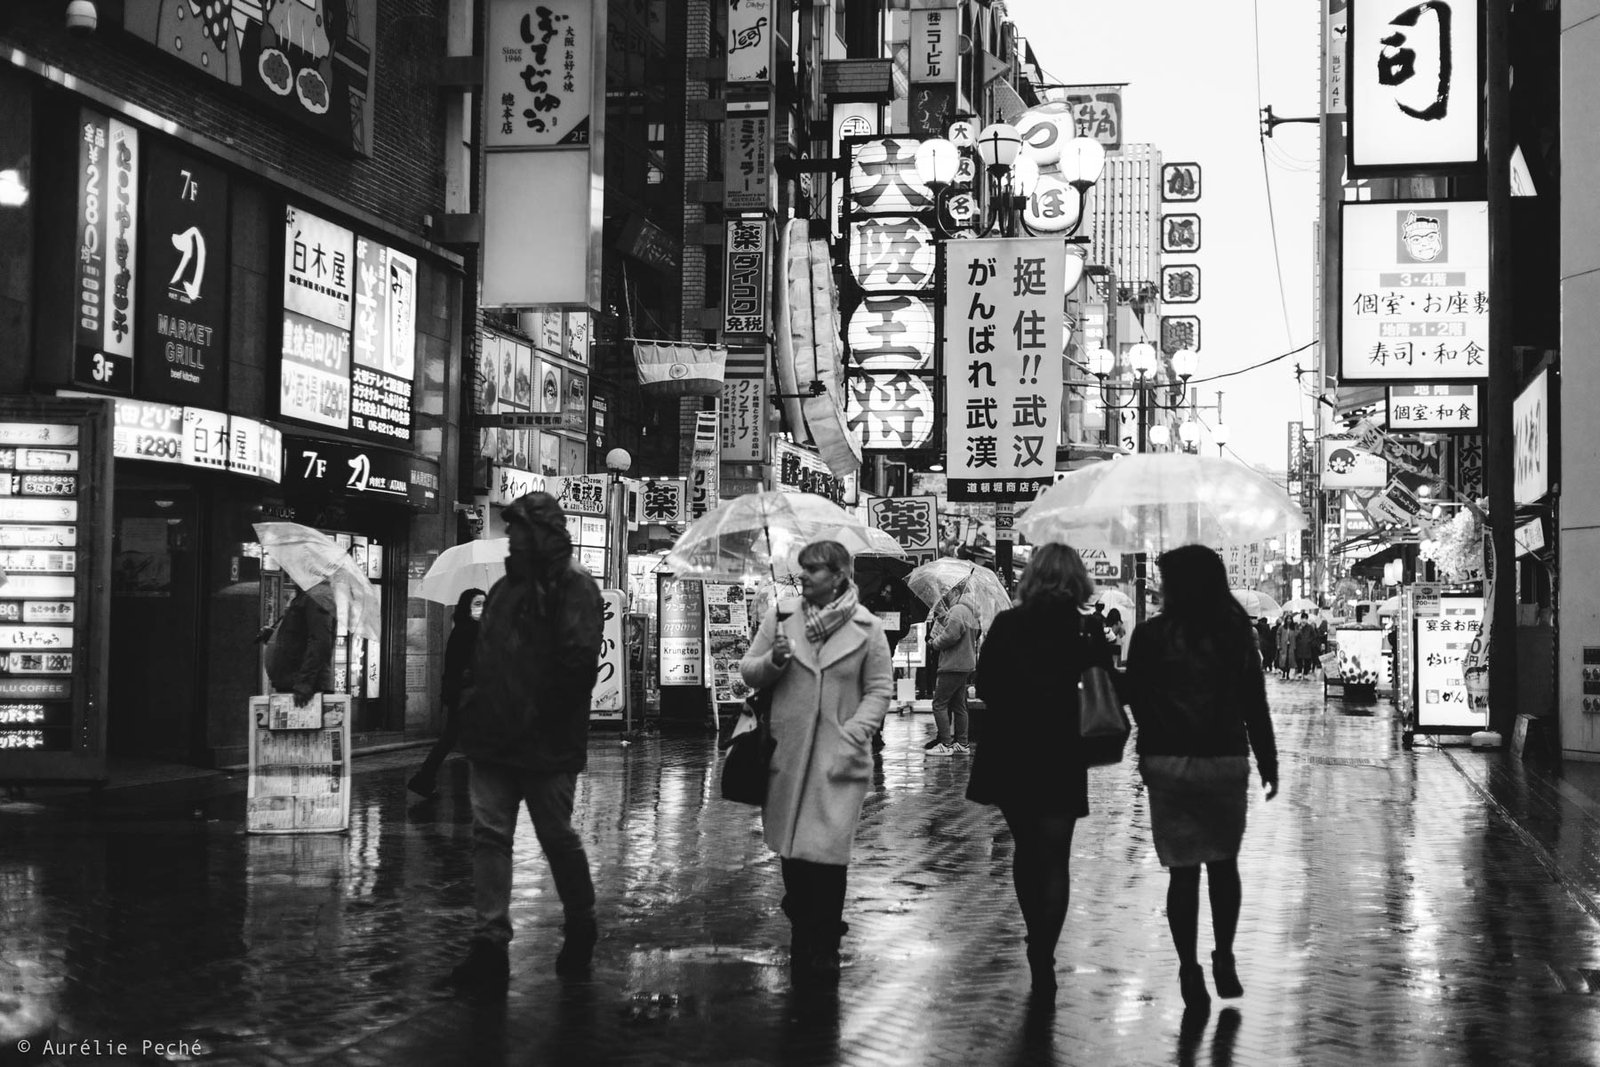 Groupe de personne dans les rues d'Osaka avec des parapluies